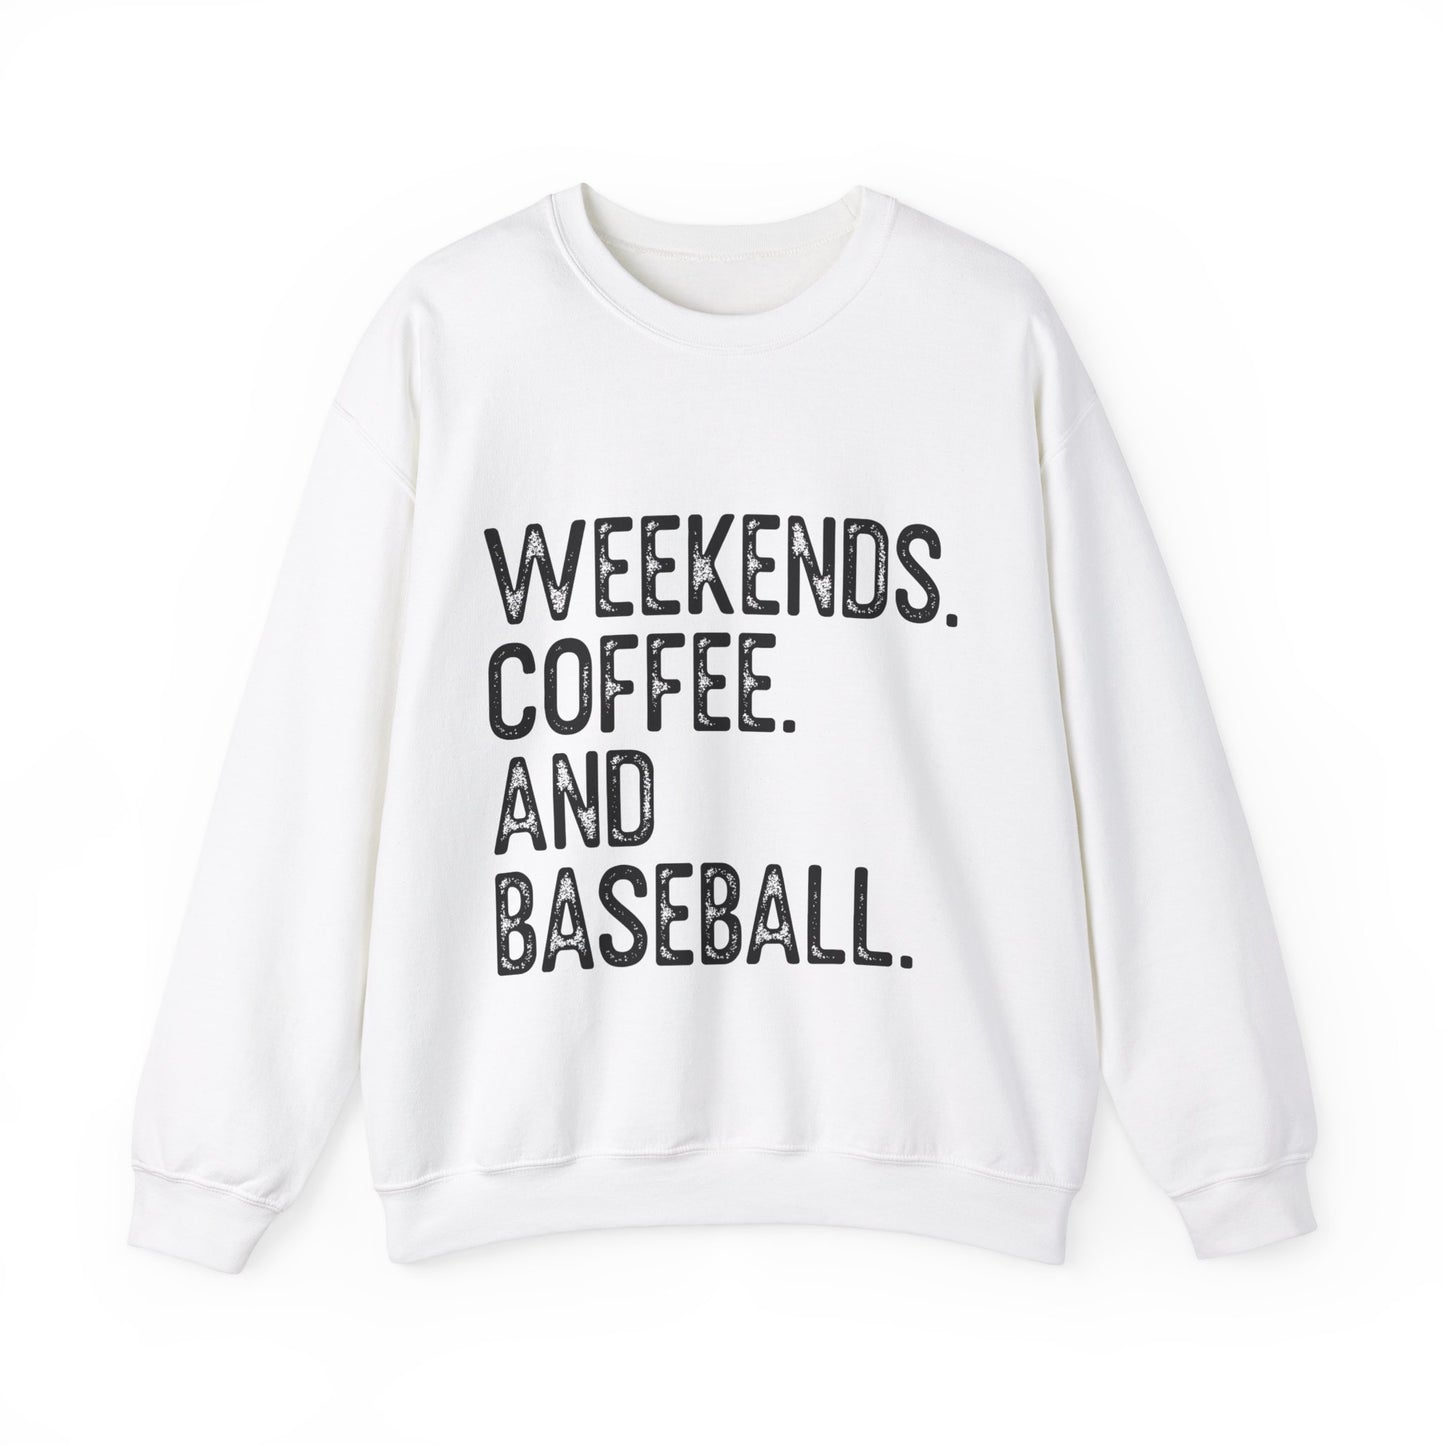 Weekends Coffee Baseball Women's Crewneck Sweatshirt